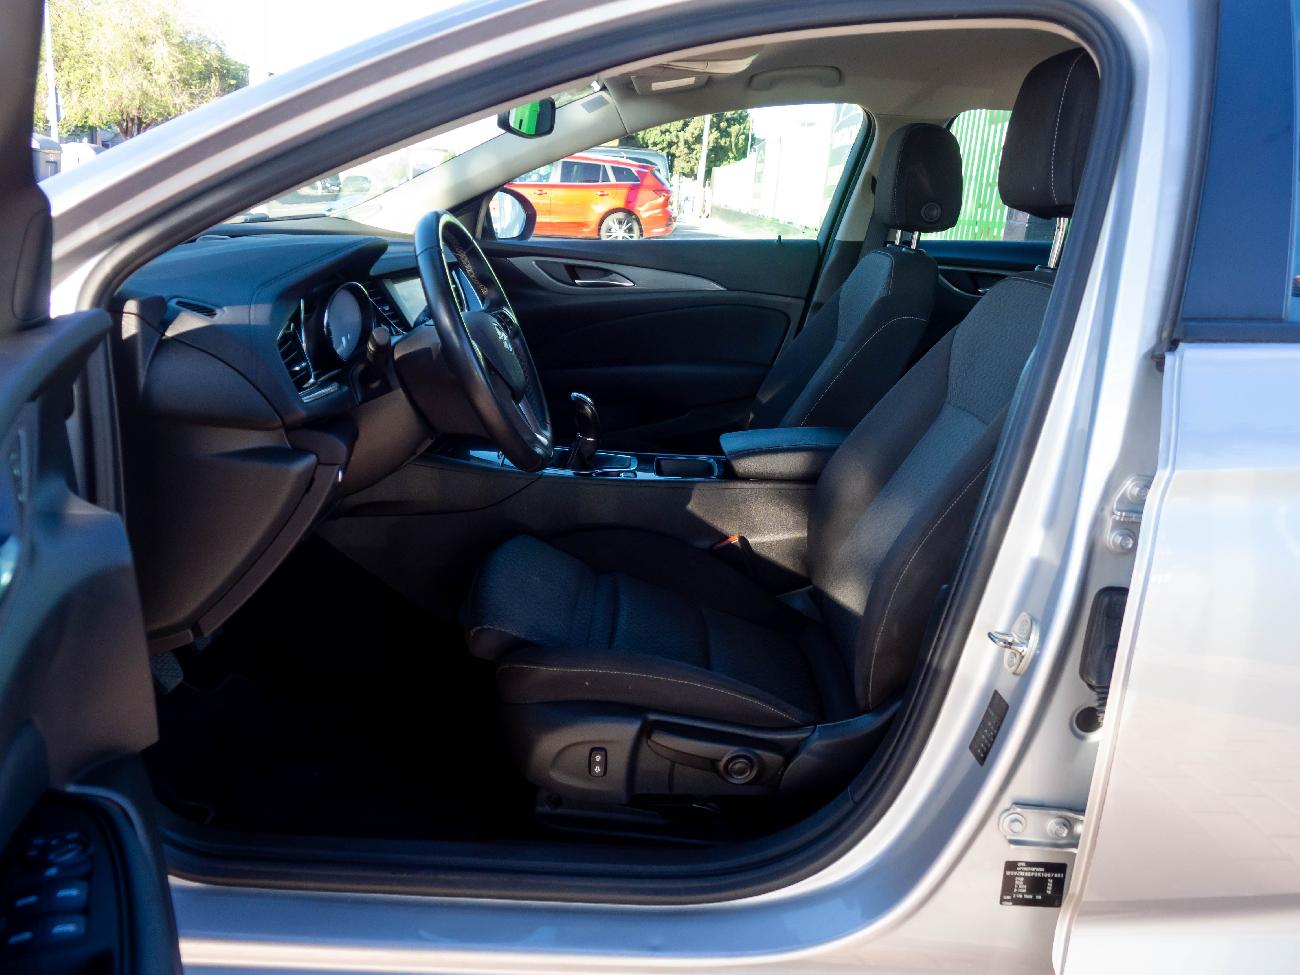 2020 Opel Insignia Insignia ST 1.6 CDTi 100kW Turbo D Selective Pro coche de segunda mano